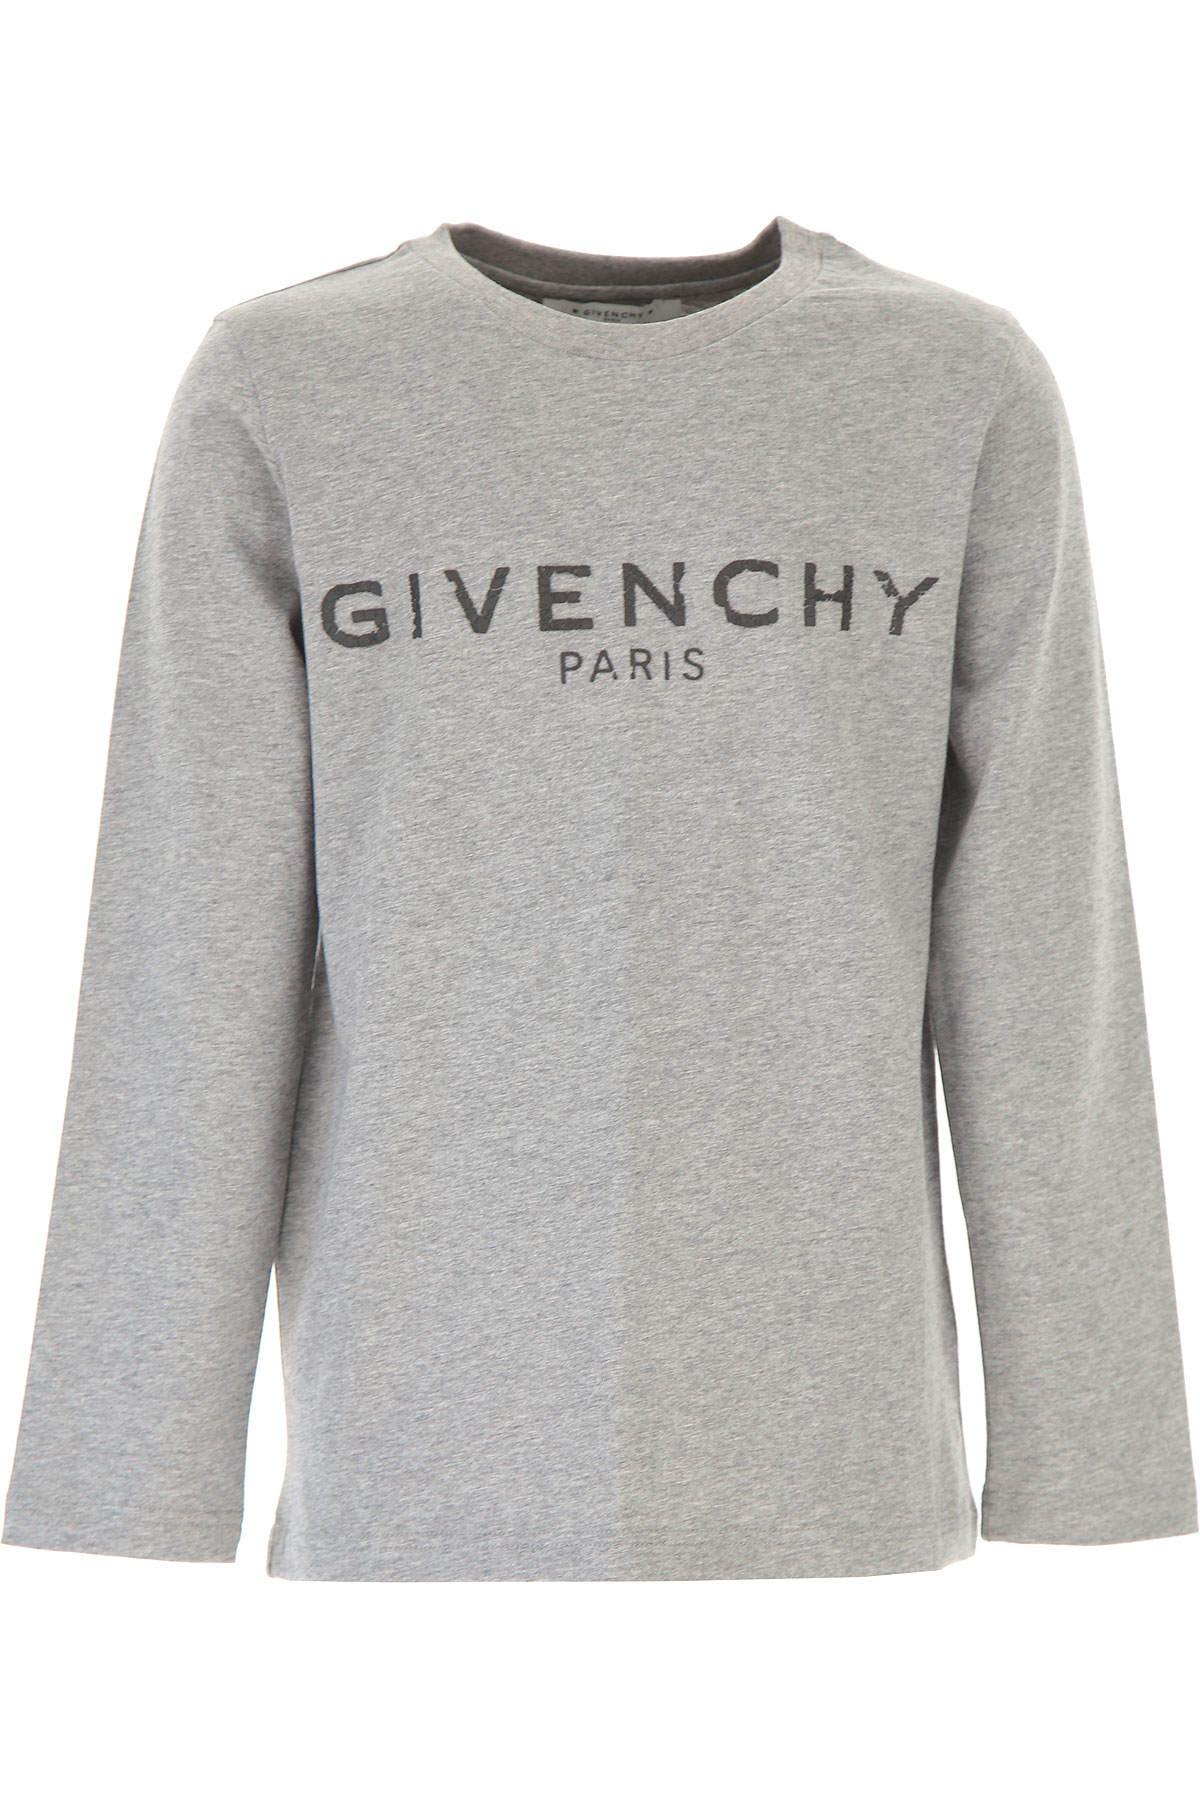 Givenchy Kinder T-Shirt für Jungen, Grau, Baumwolle, 2017, 10Y 12Y 14Y 4Y 6Y 8Y